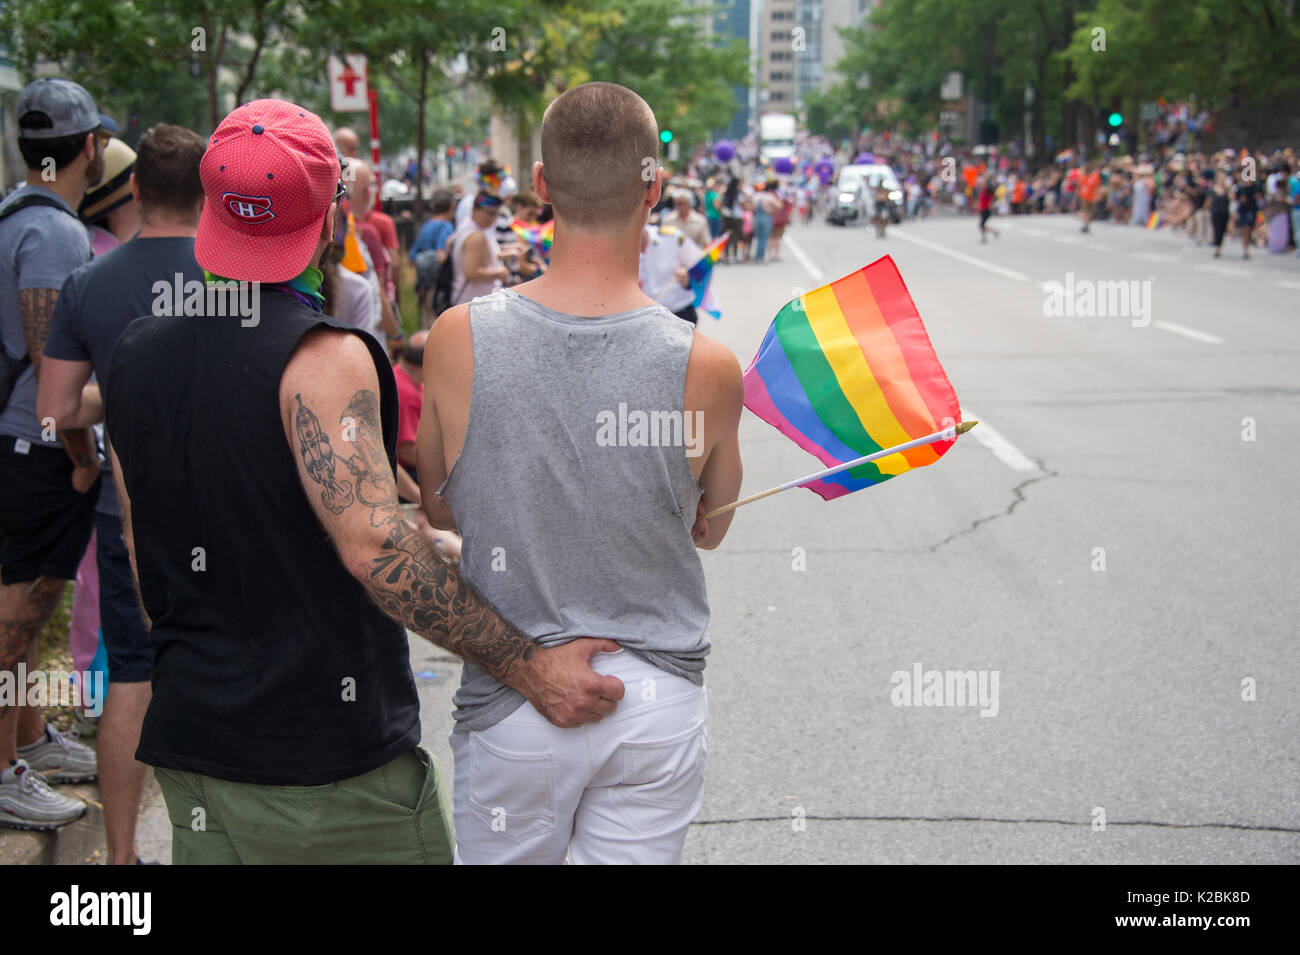 Montréal, Canada - 20 août 2017 : vue arrière d'un gay homme couple tenant un drapeau arc-en-ciel gay gay pride parade à Montréal Banque D'Images